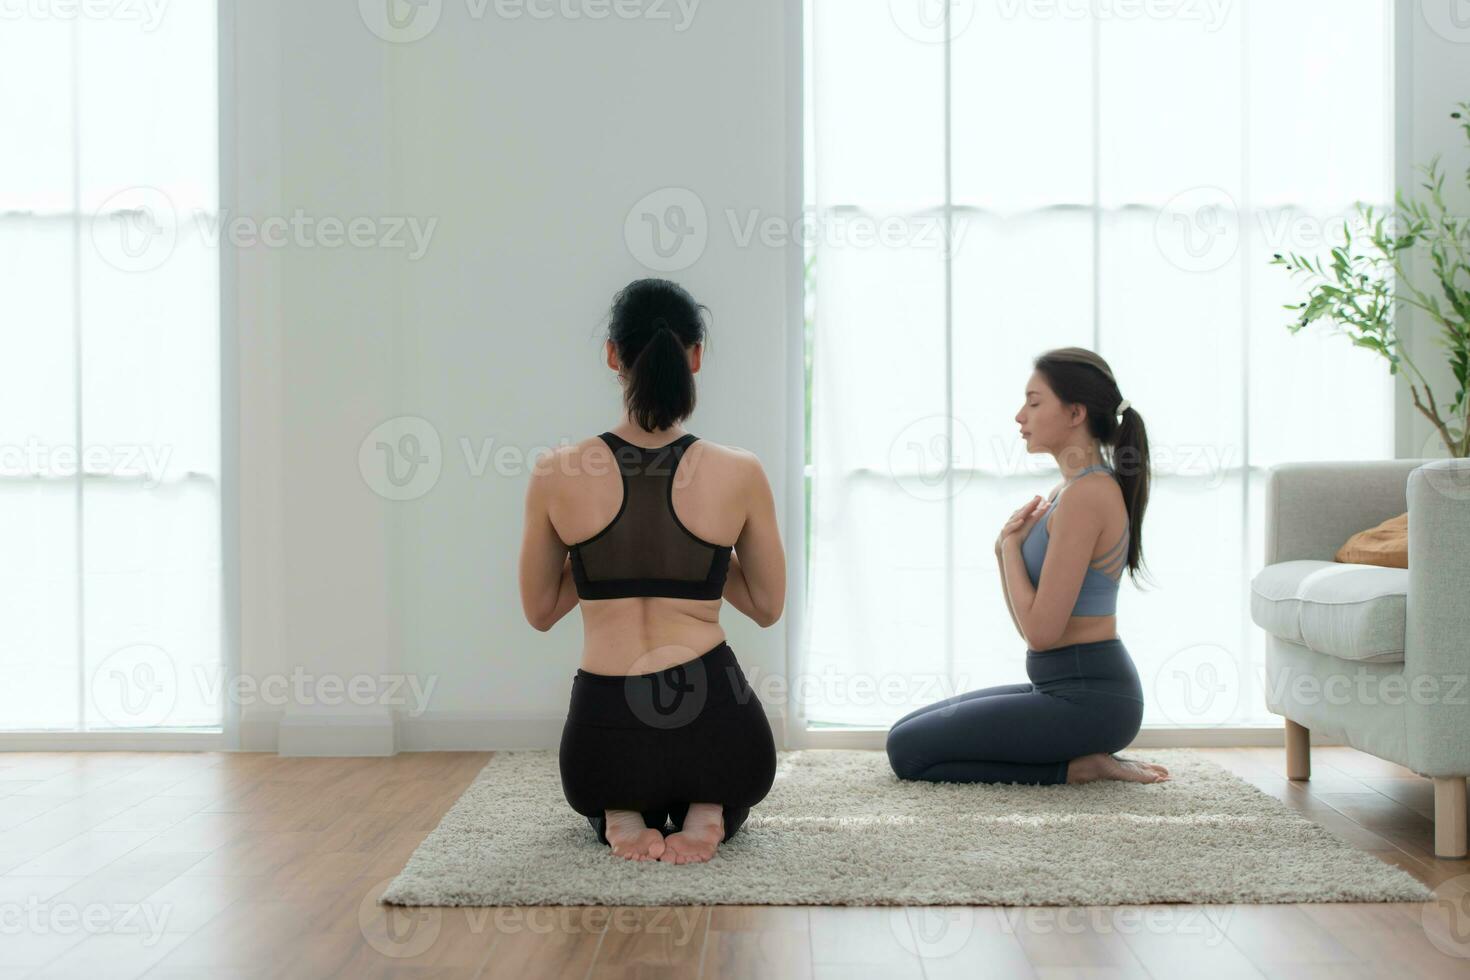 jong vrouw beoefenen yoga met instructeur in huis. individu yoga klasse beoefenen in huis foto